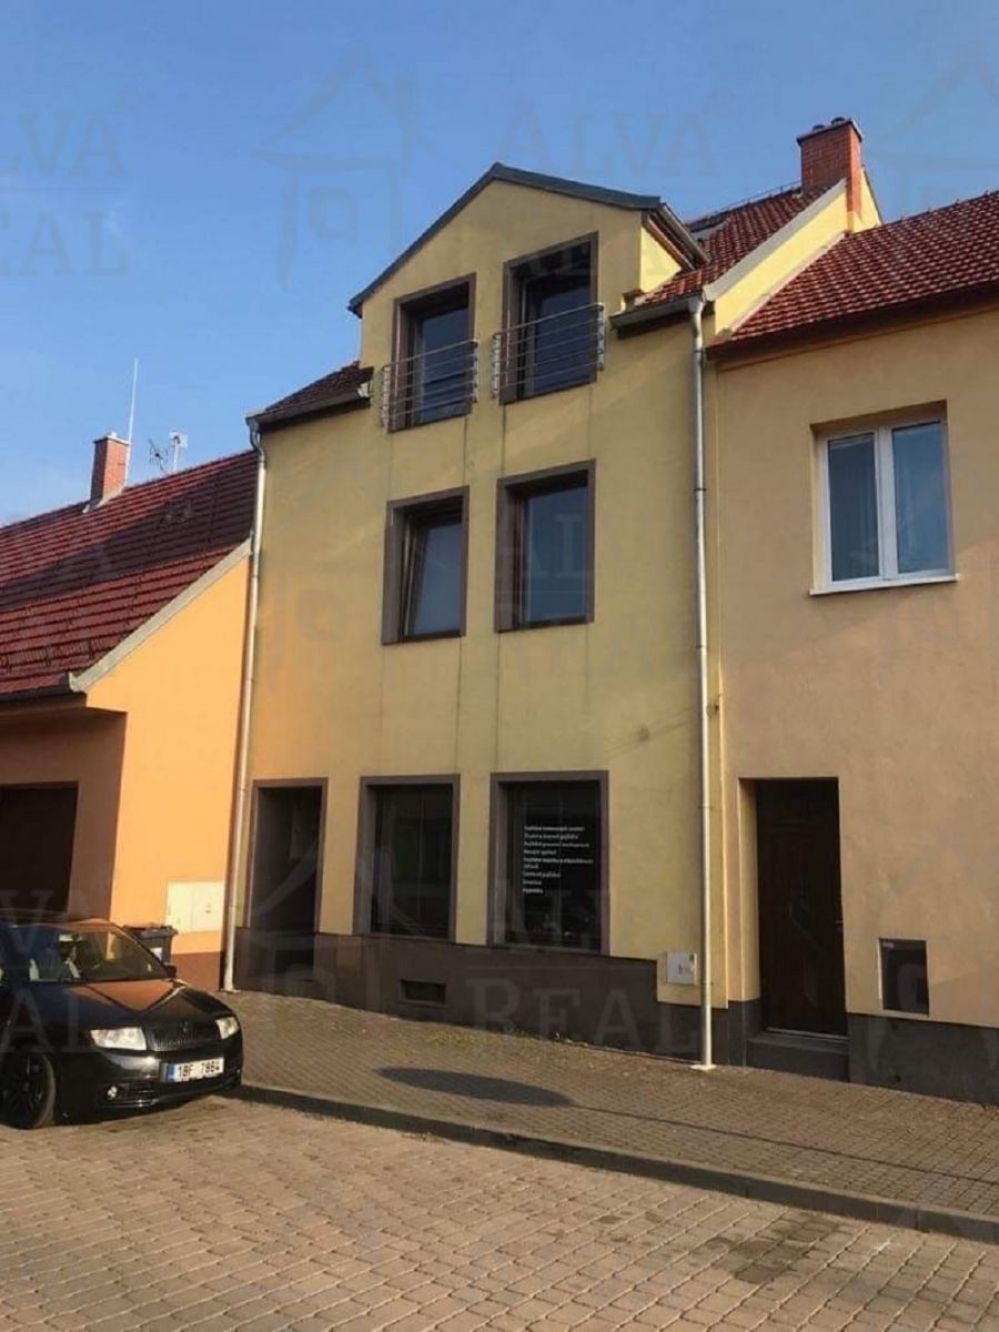 Dlouhodobý pronájem mezonetového bytu ve Slavkově u Brna na ul. Brněnská, CP 76,2 m2, terasa, sklep.